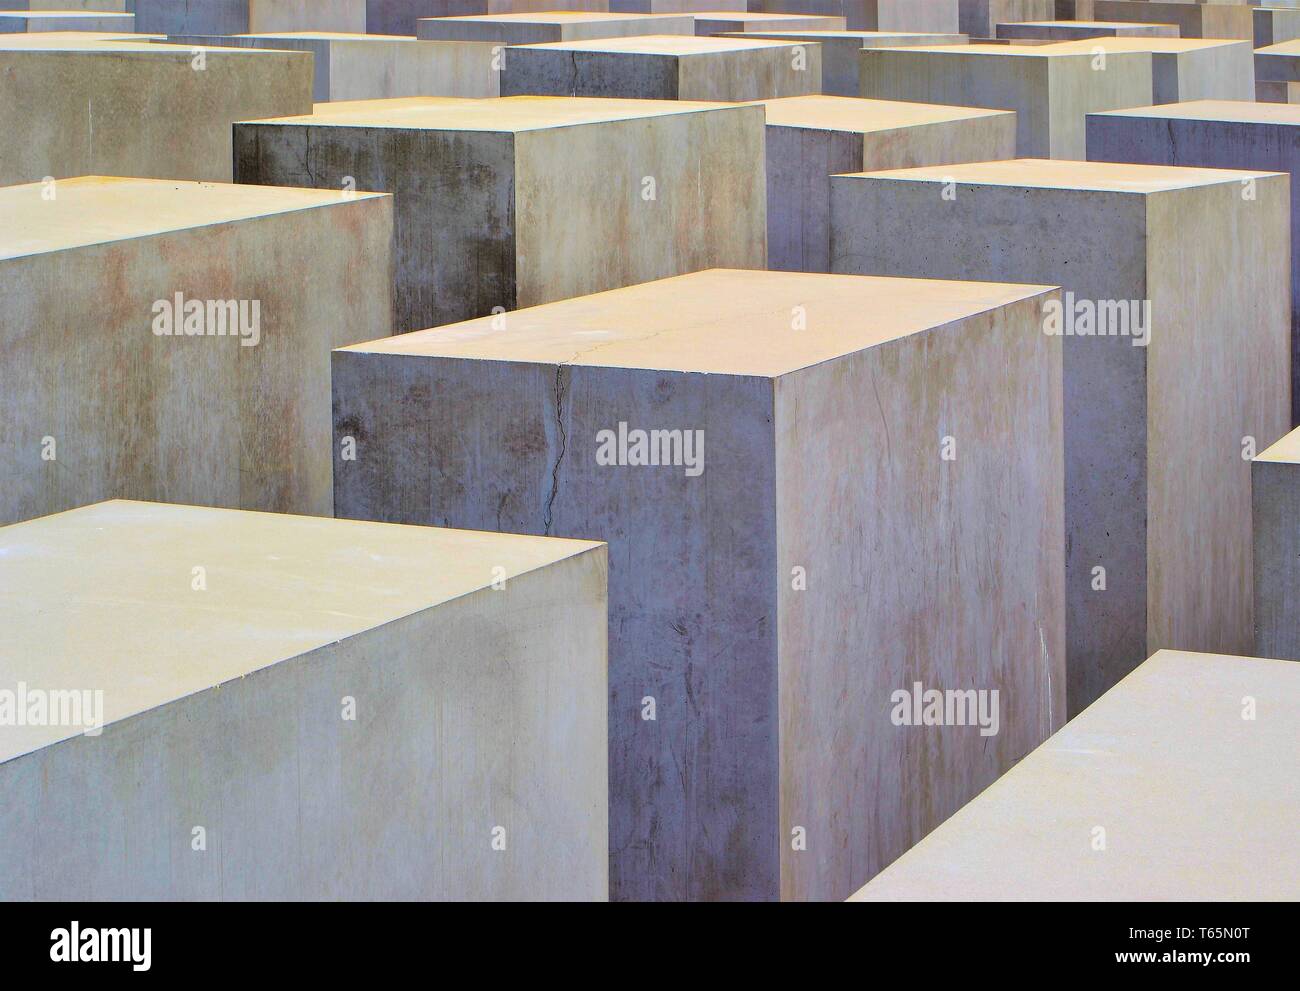 Holocaust Memorial in Berlin in memory of the murd Stock Photo